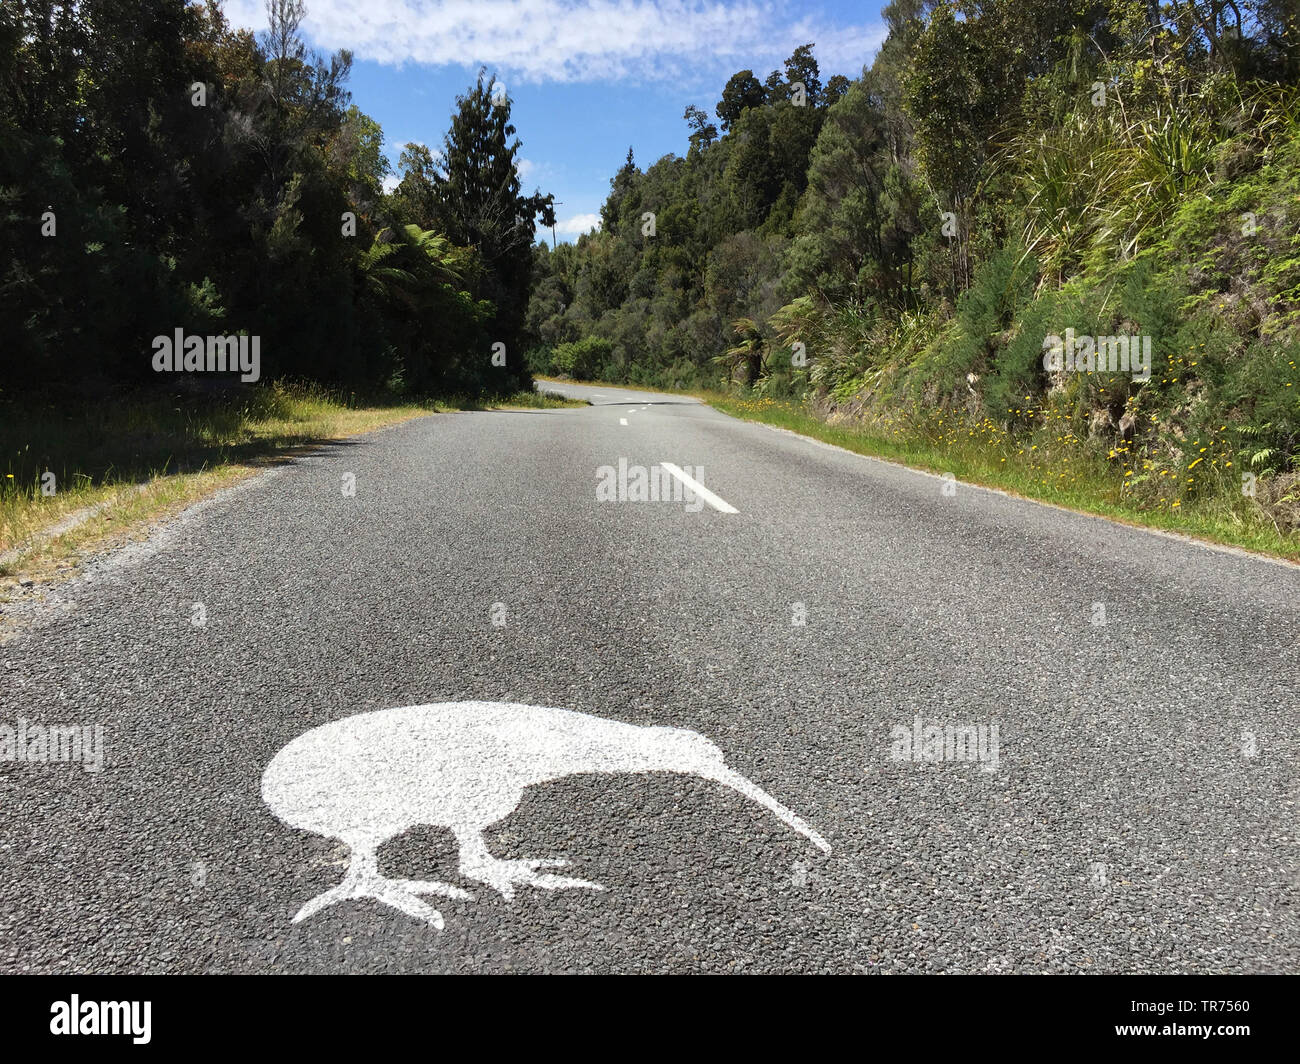 Okarito kiwi, Rowi, Okarito brown kiwi (Apteryx rowi), Roadsign Okarito Kiwi near Okarito, New Zealand, Southern Island, Okarito Stock Photo